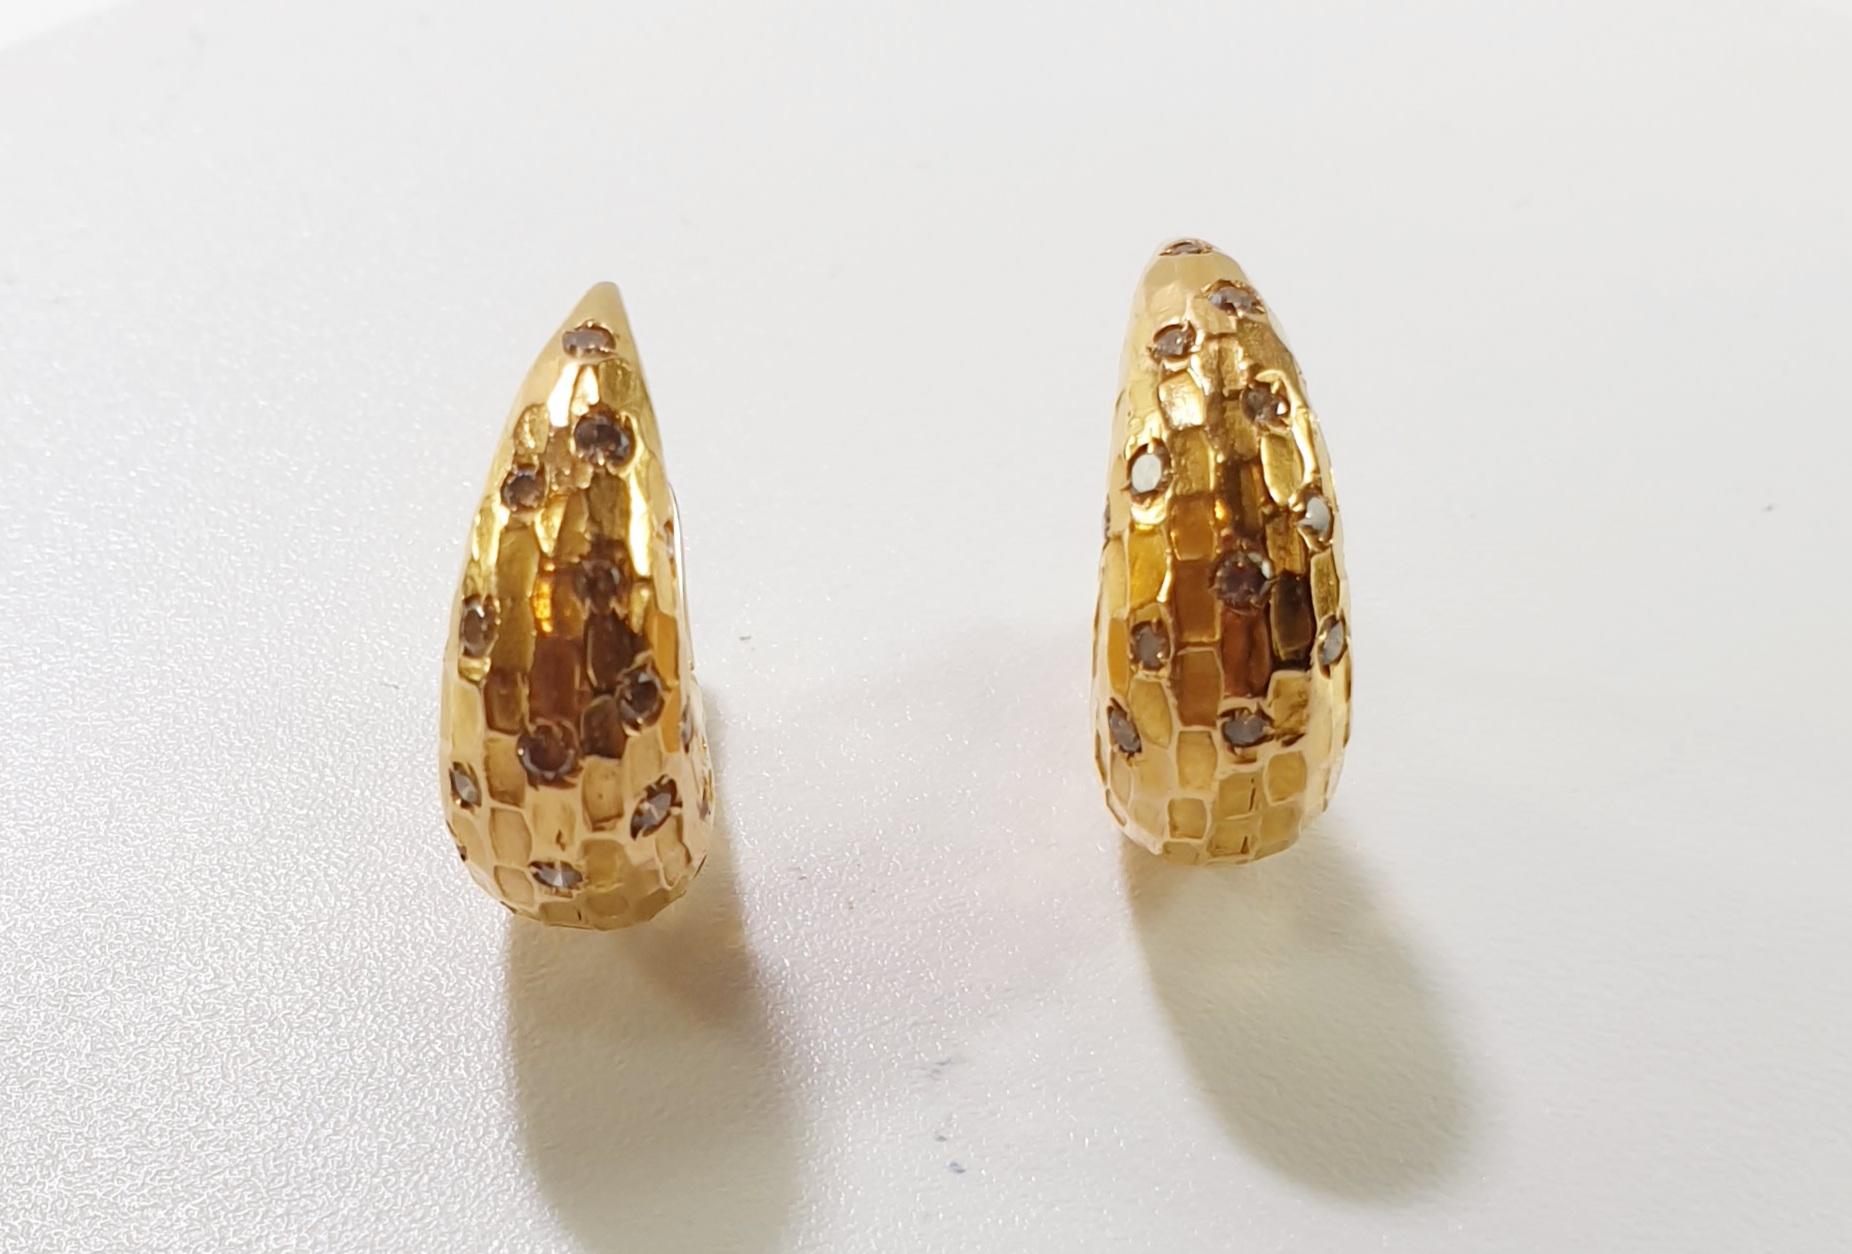 Pomellato Rose Gold Diamant Duna Ohrringe
Ein Paar einzigartige Pomellato-Ohrringe aus 18 Karat Roségold aus der Collection'S Duna. Die Ohrringe bestehen aus einer Bombe mit 15 runden Diamanten im Brillantschliff, die abstrakt in einer